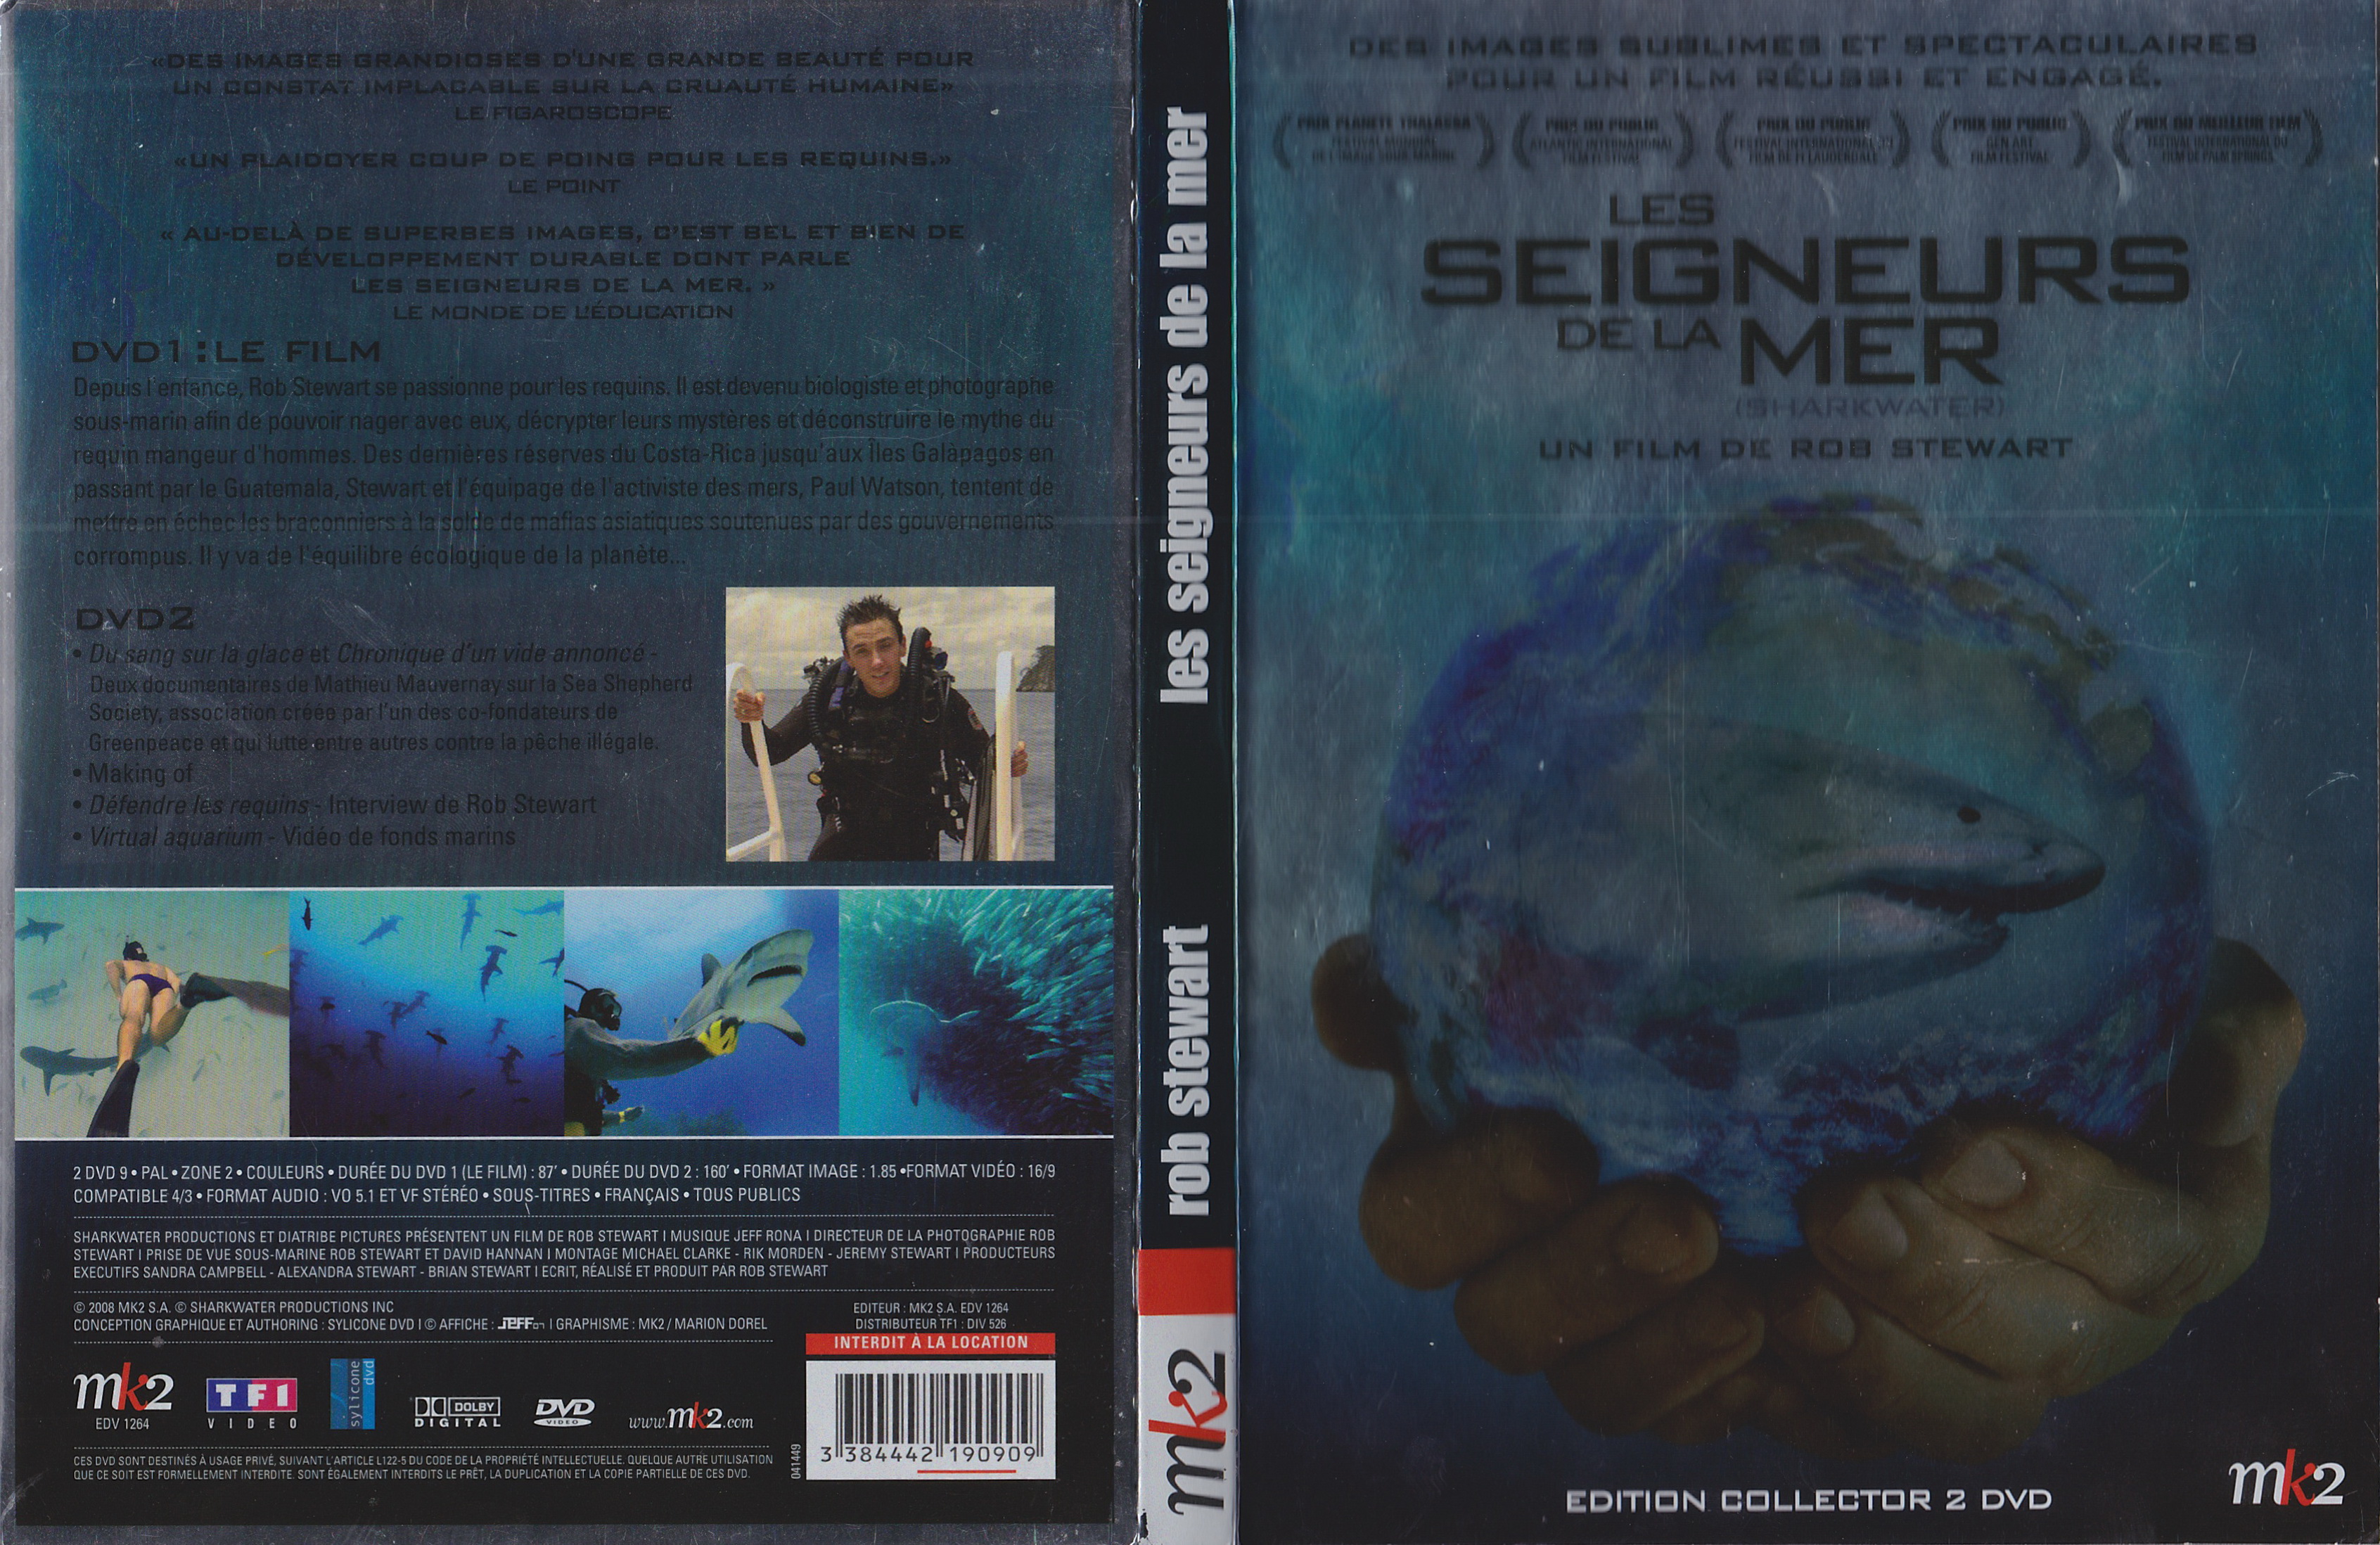 Jaquette DVD Les seigneurs de la mer